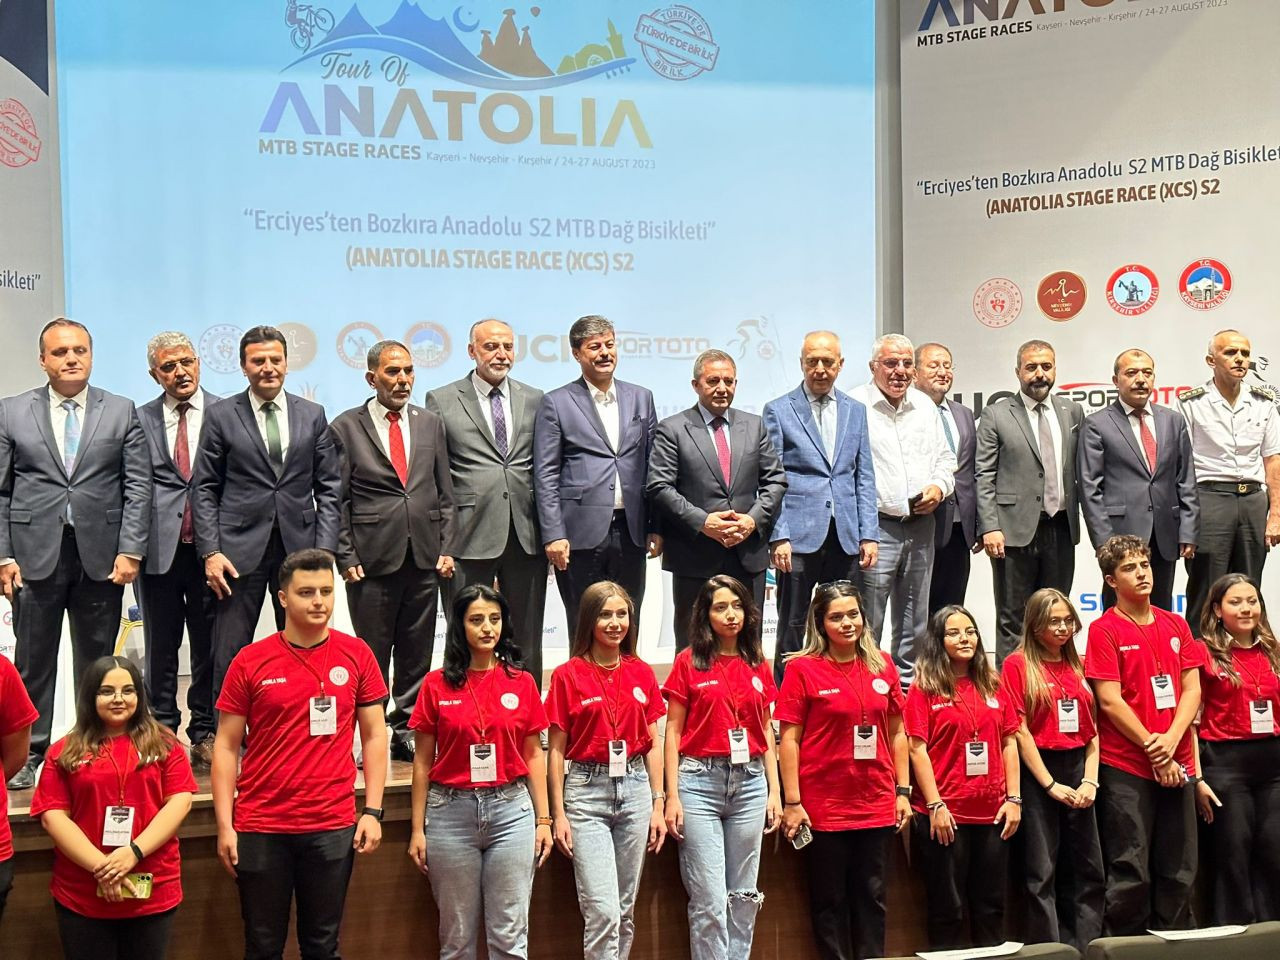 Tour of Anatolia Kırşehir Basın Lansmanı Neşet Ertaş Kültür Sanat Merkezinde gerçekleşti! - Sayfa 4